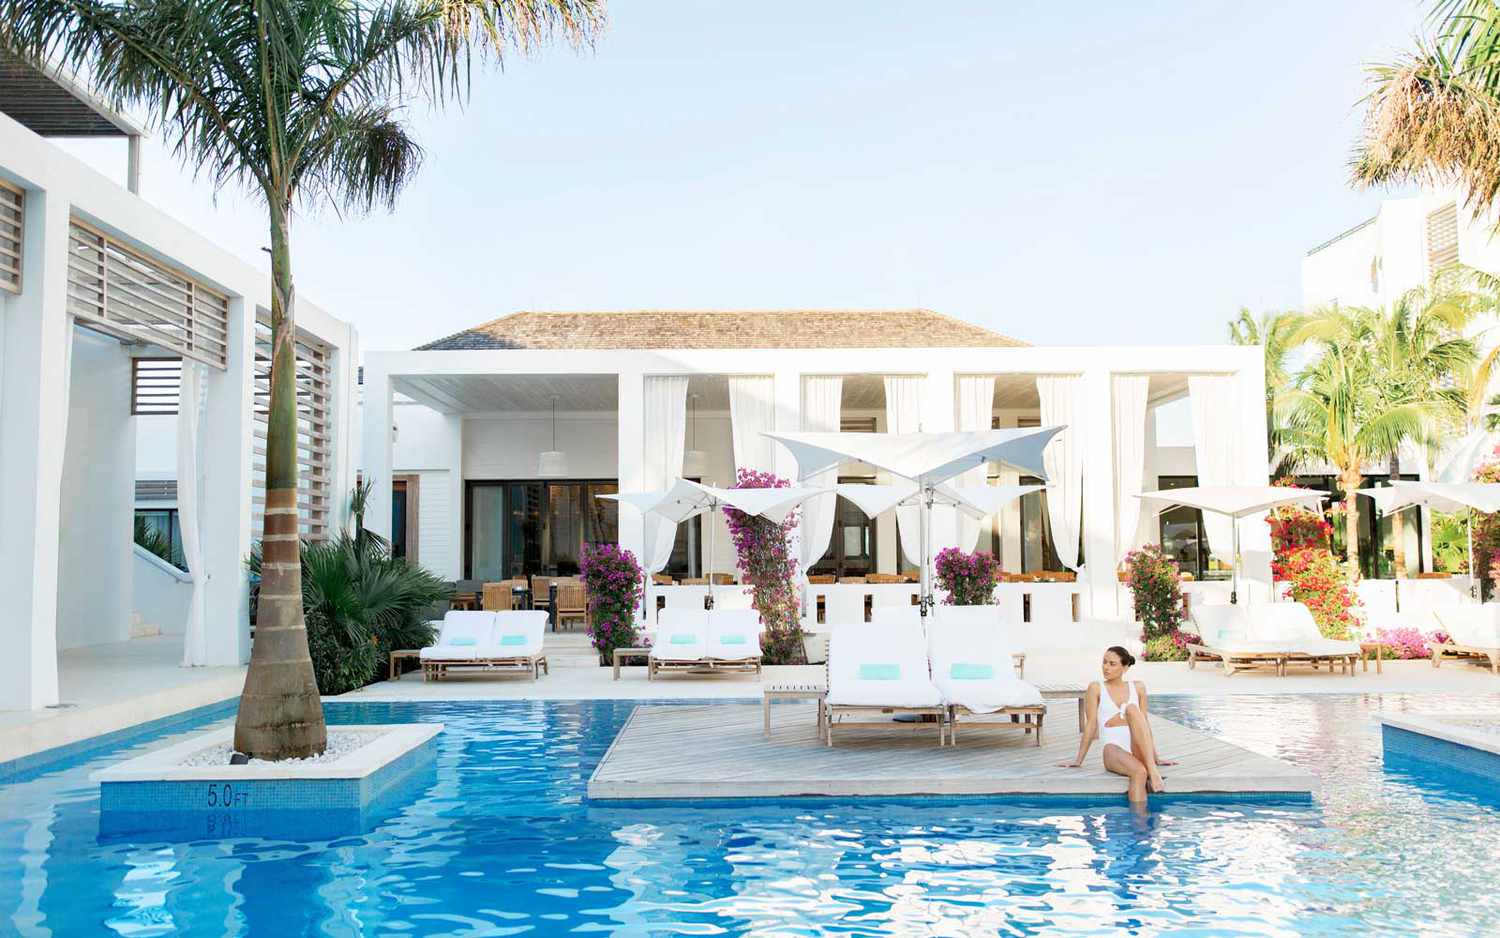 Une femme est assise à côté de la piscine centrale du Wymara Resort dans les îles Turques et Caïques